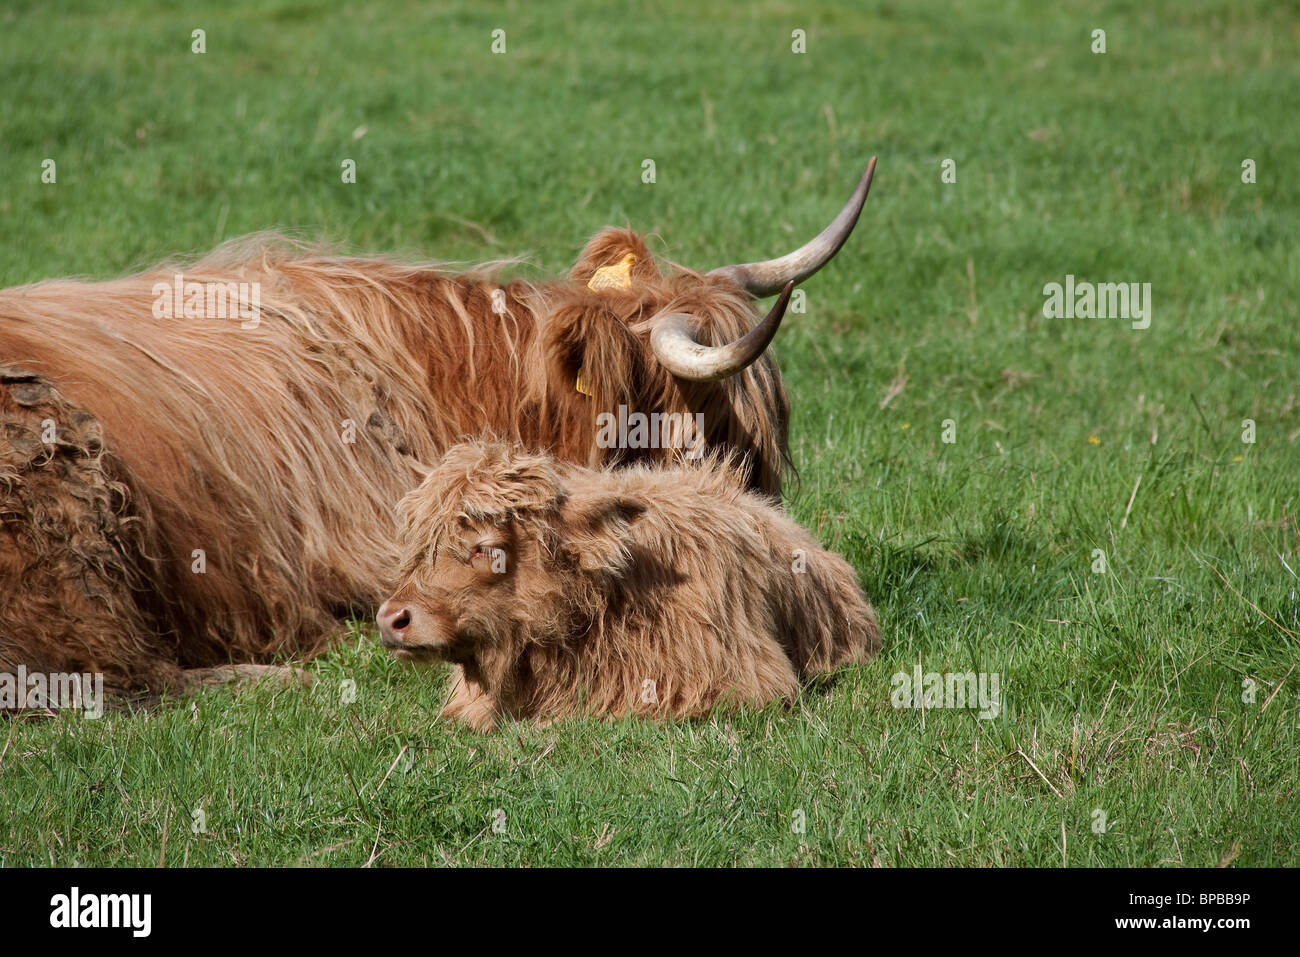 Bovino escocés que dormir en la pradera Foto de stock